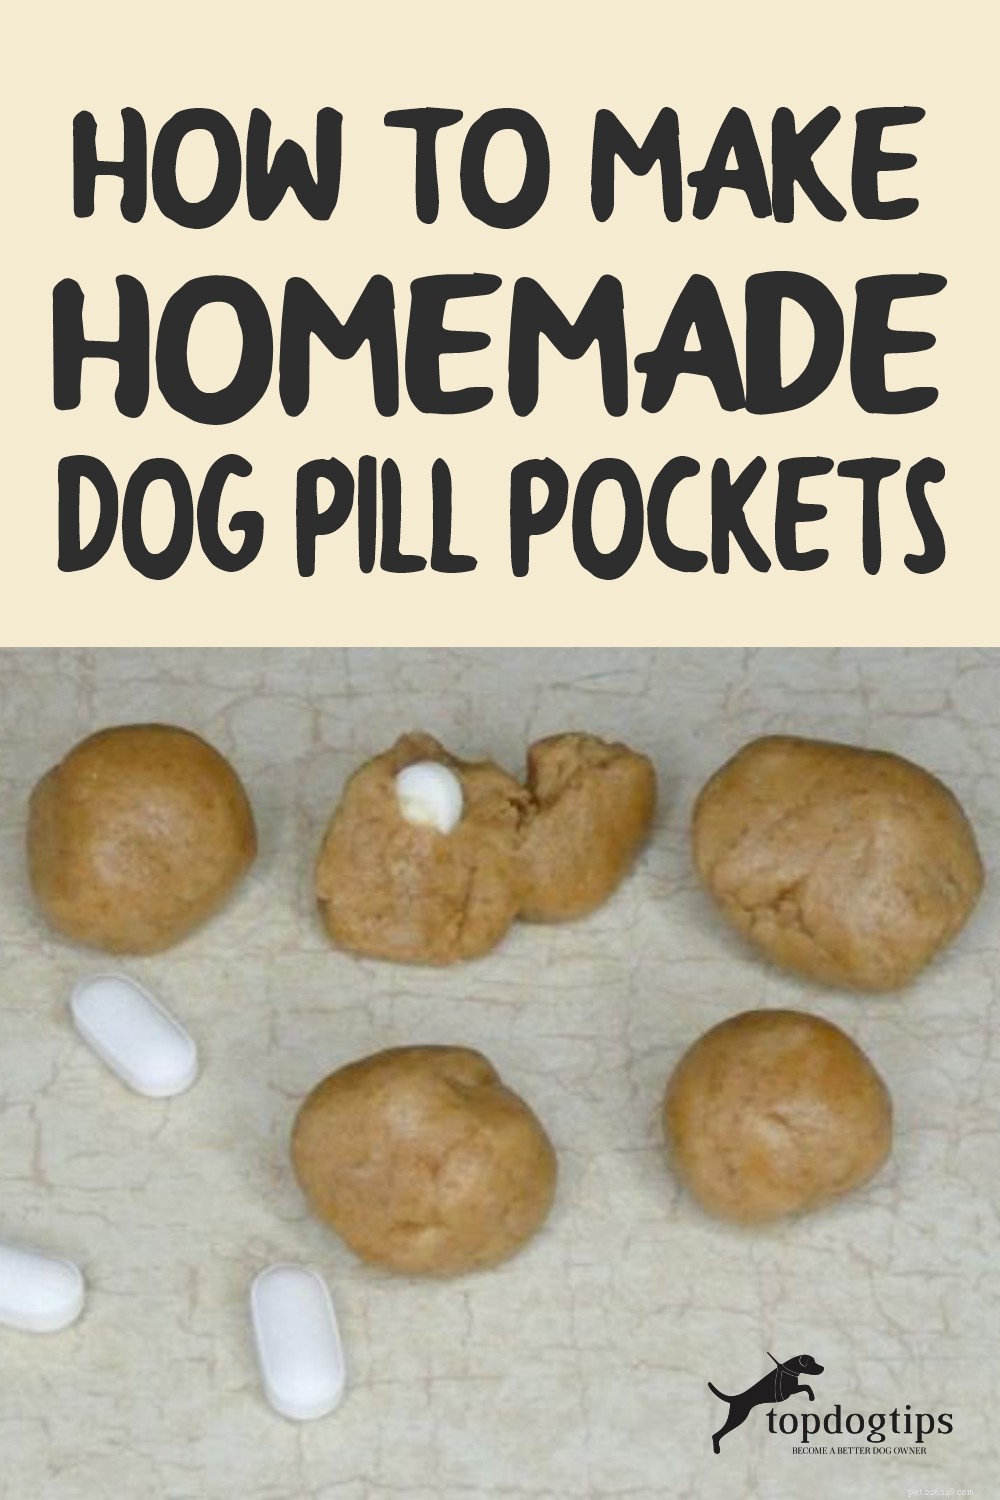 Comment faire des pochettes de pilules maison pour chien